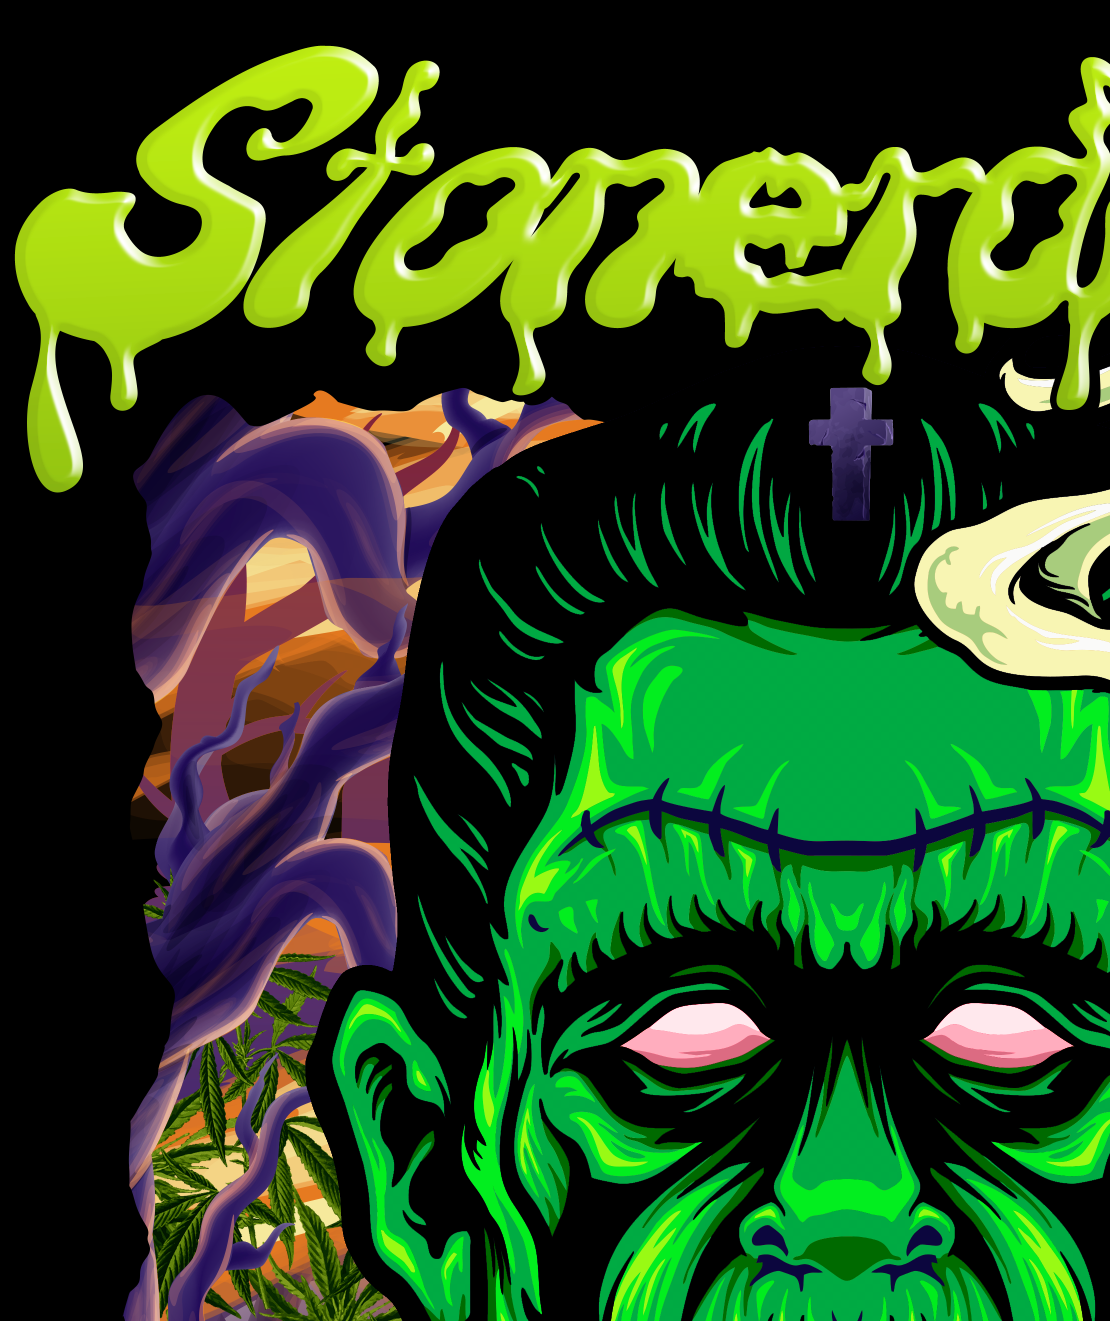 StonerDays Dankenstein T-shirt design featuring vibrant green Frankenstein graphic on black